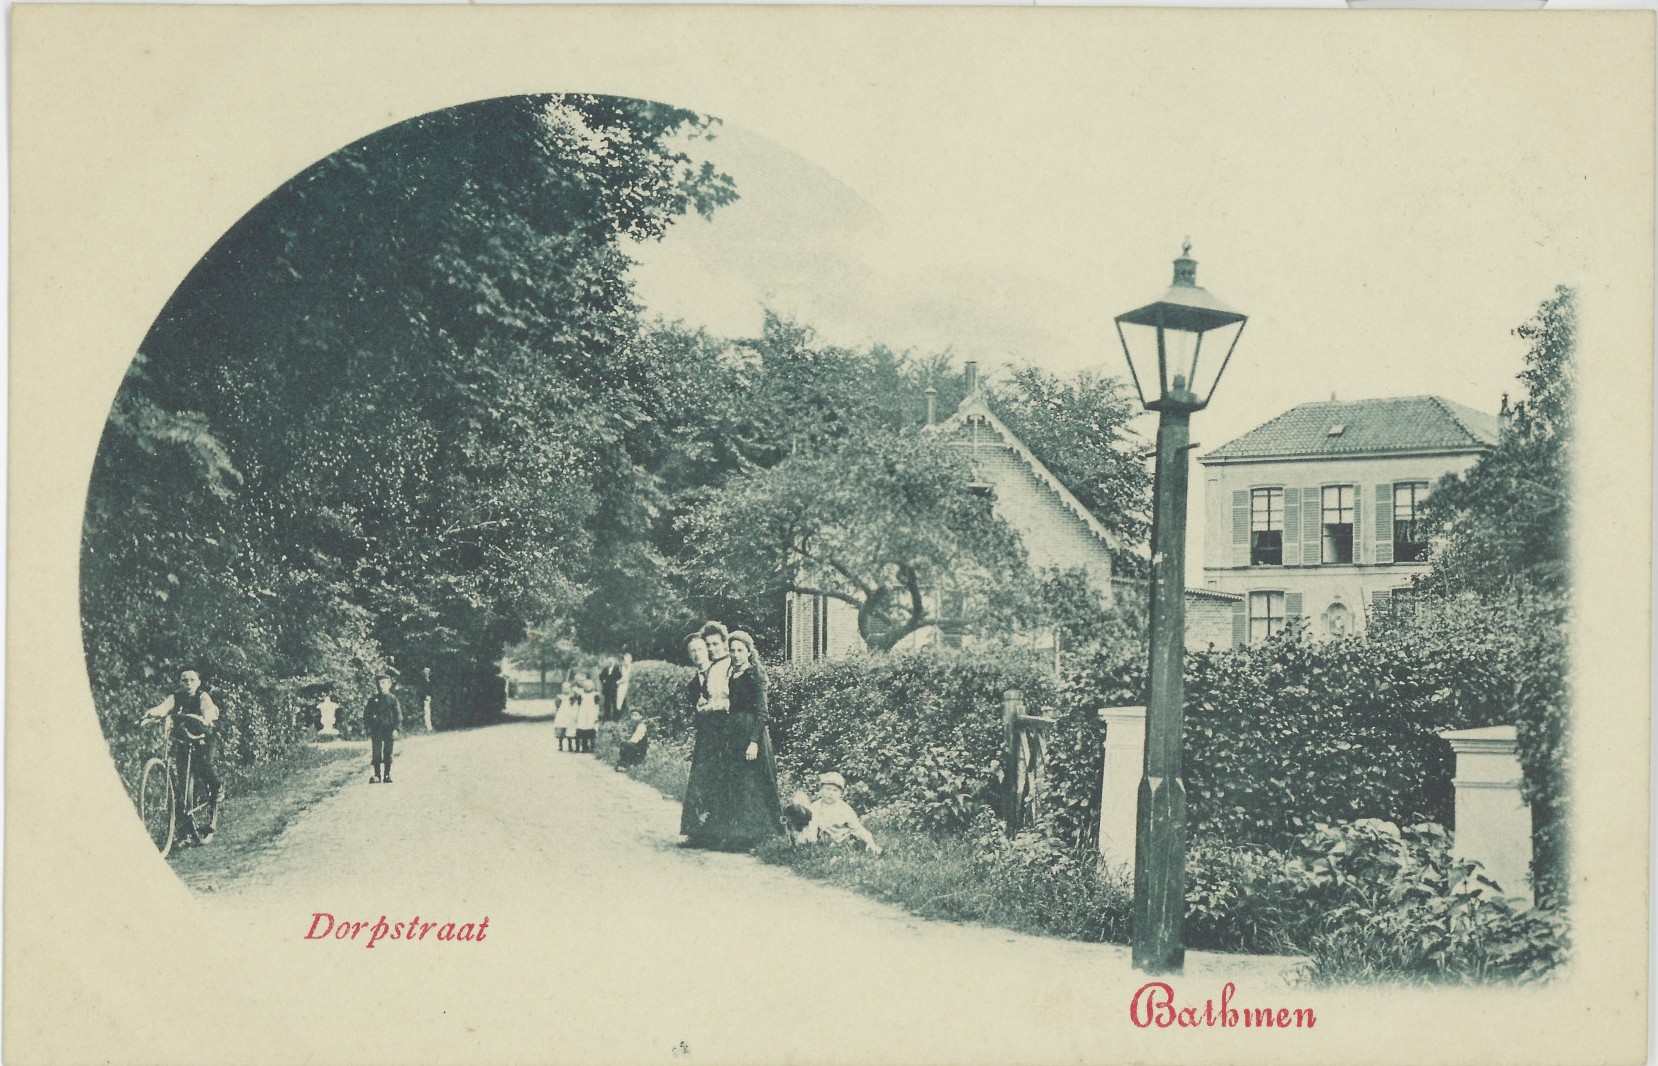 Bathmen Dorpsstraat 1900